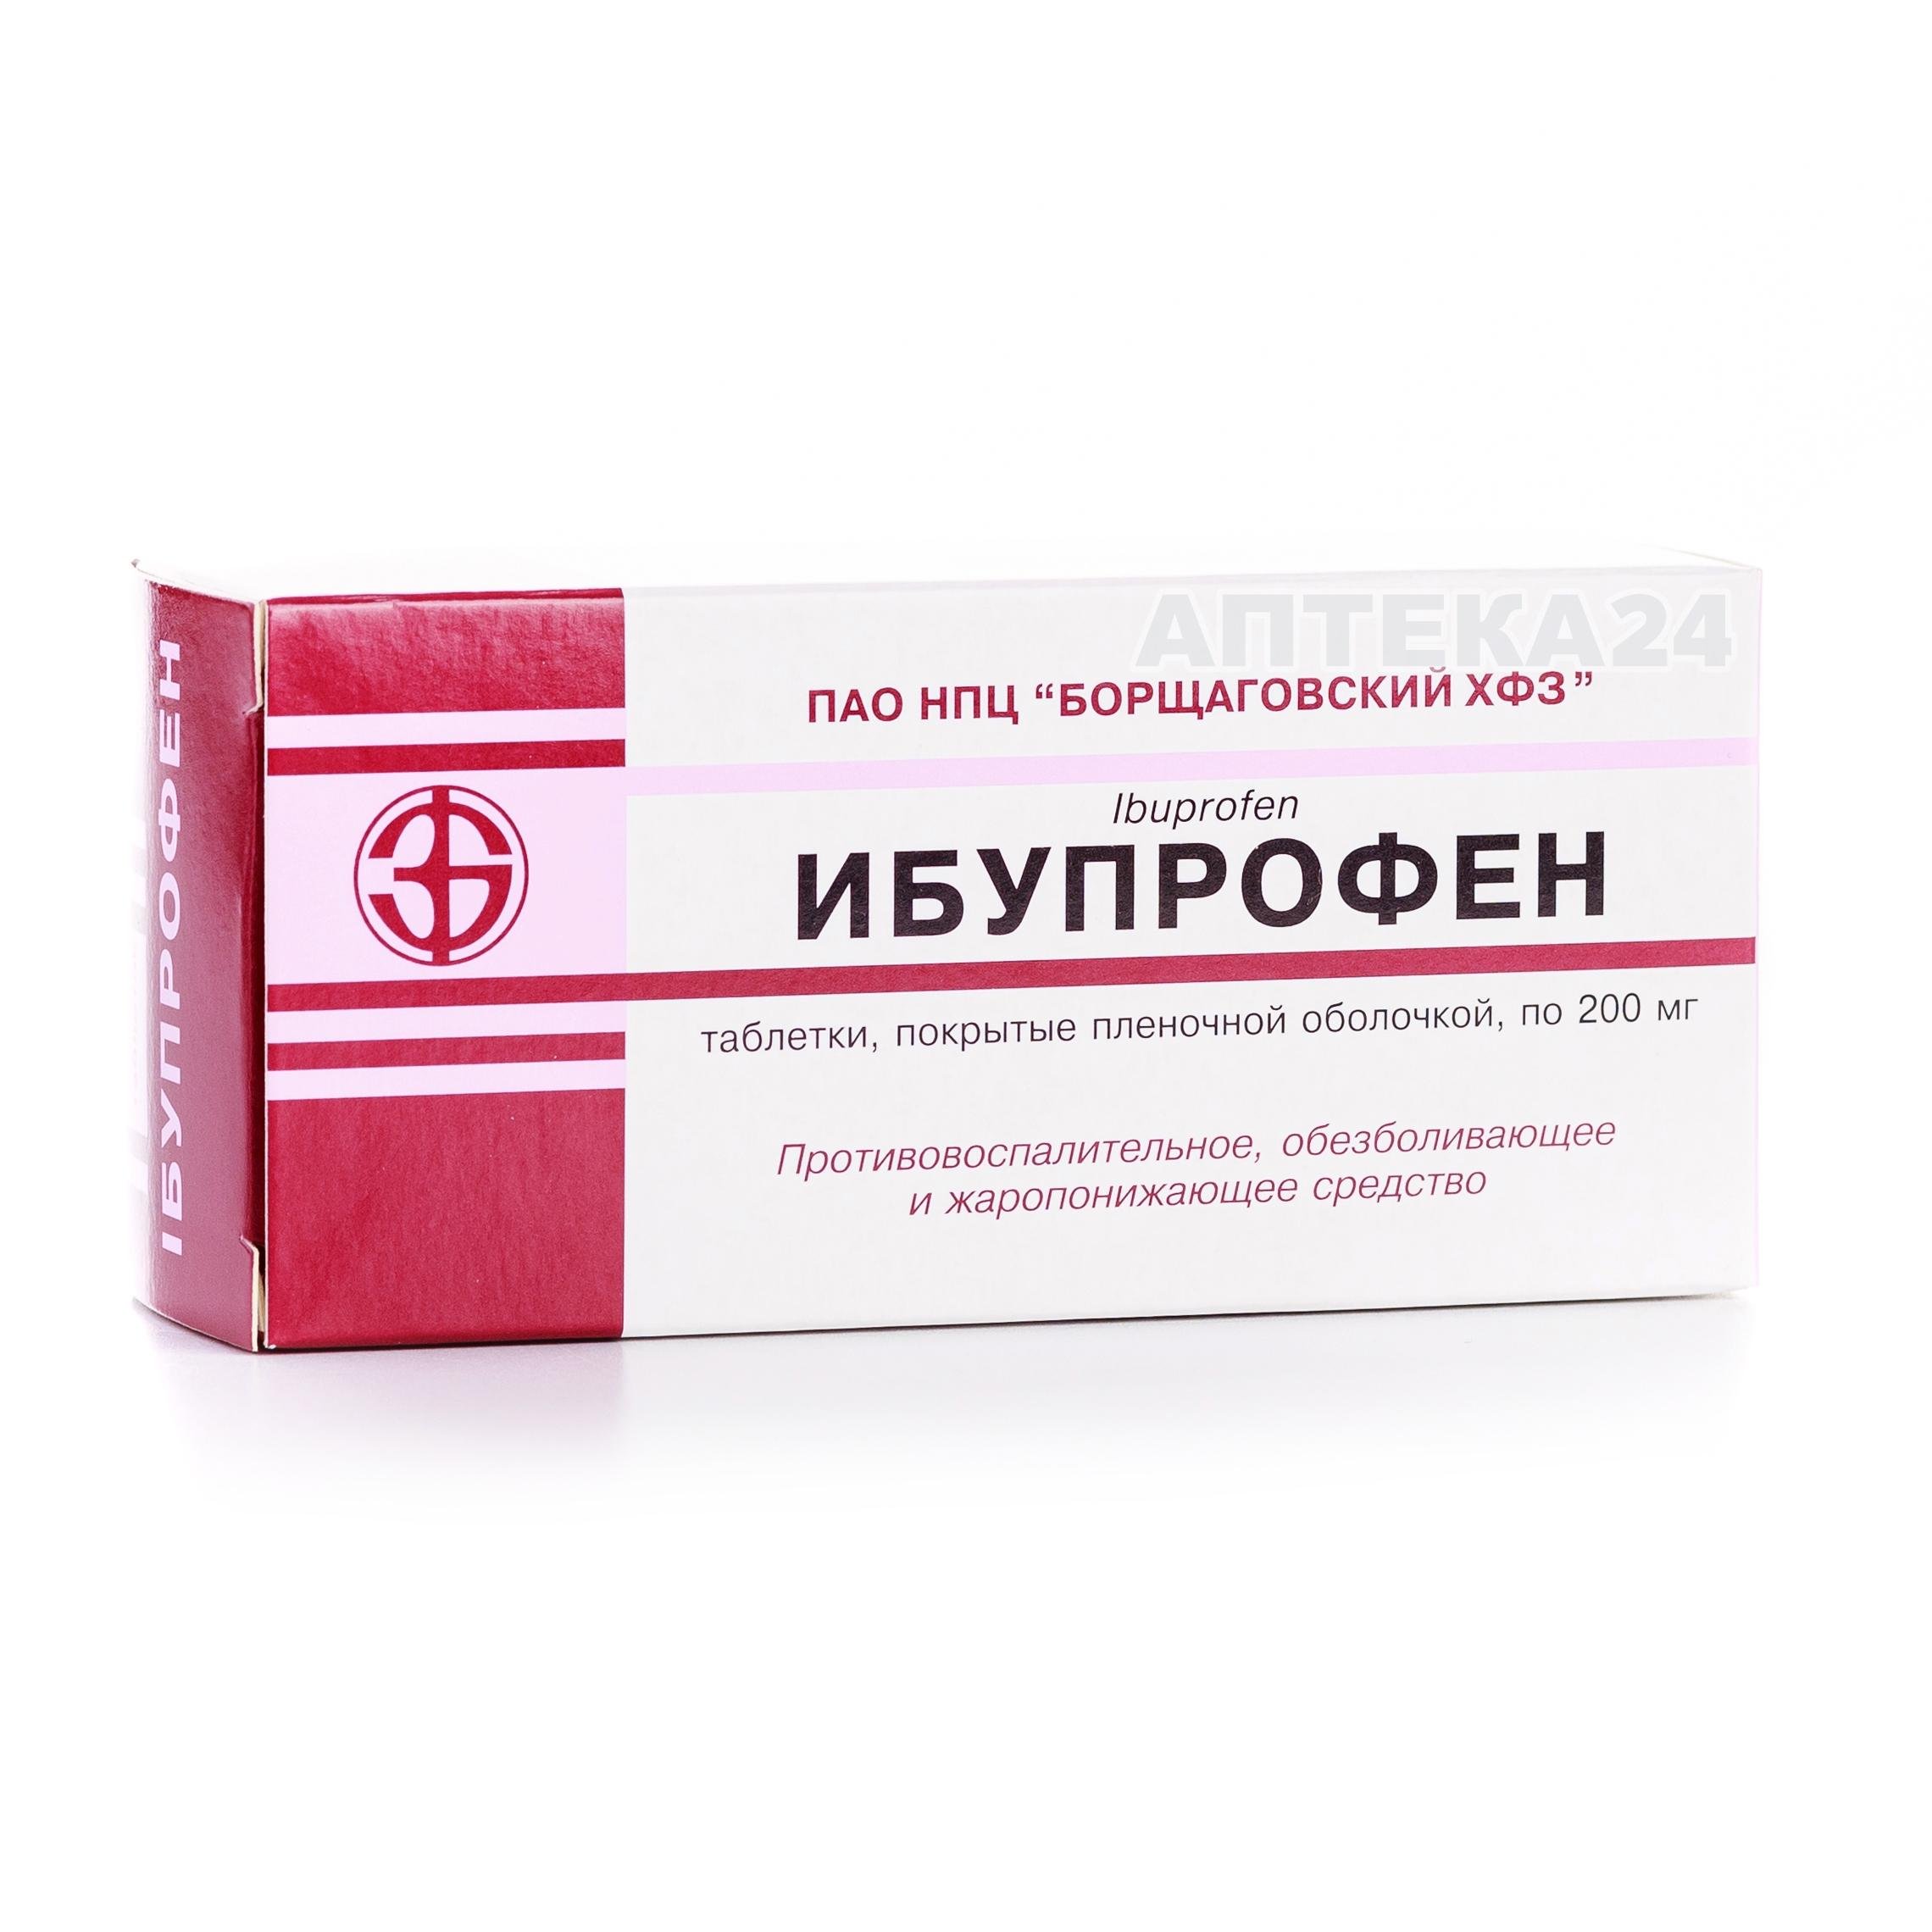 Ибупрофен 200 мг N50 таблетки_6001bb59966a9.jpeg